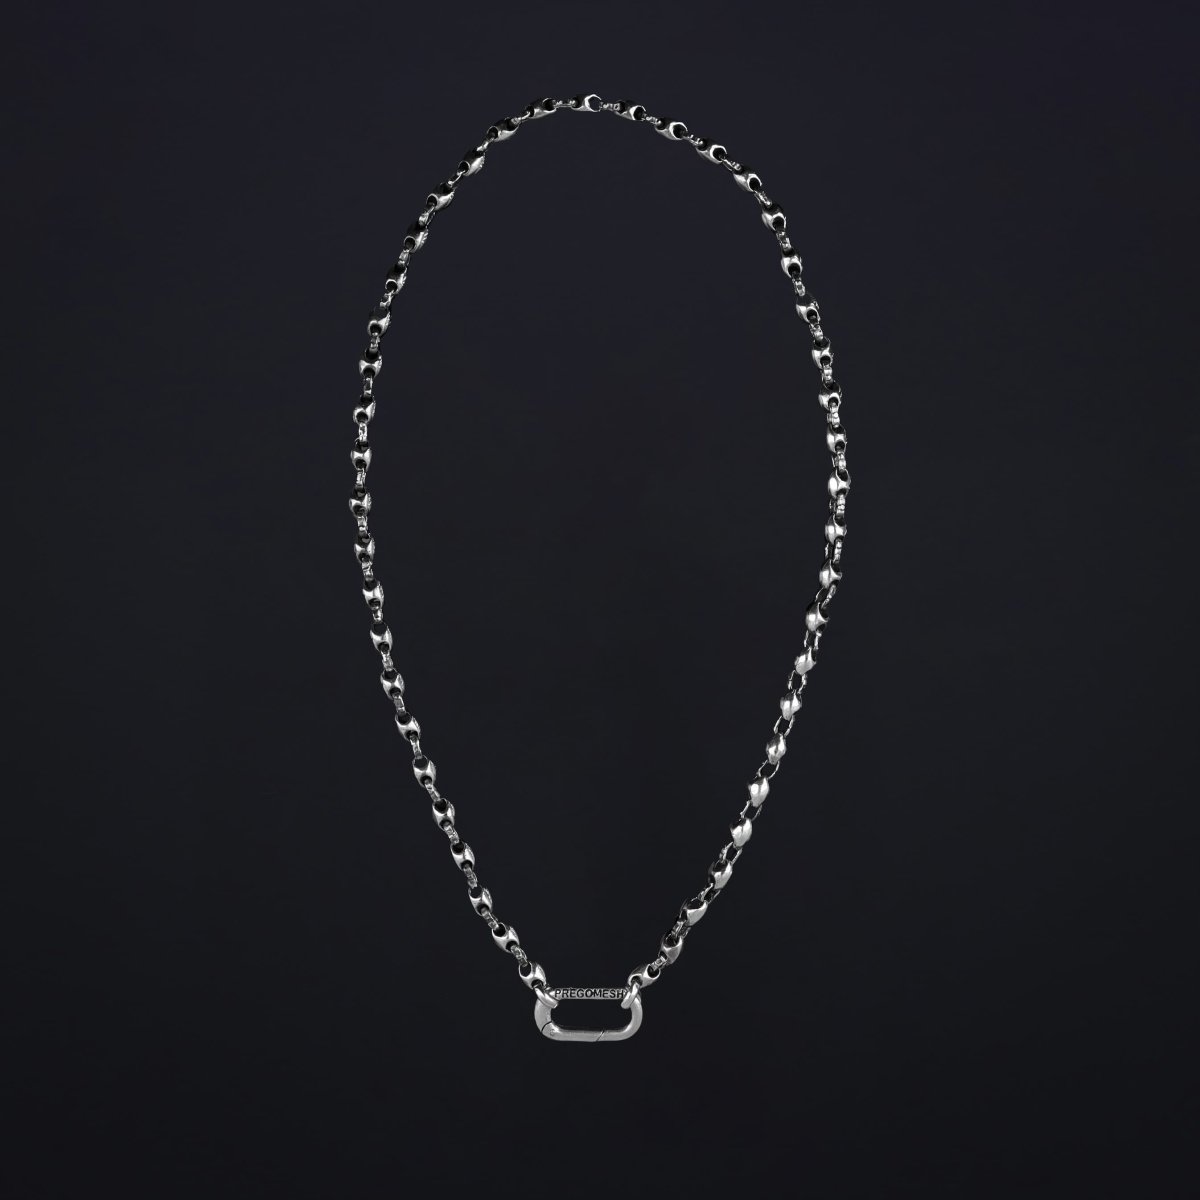 Necklace "Carabiner" - Pregomesh